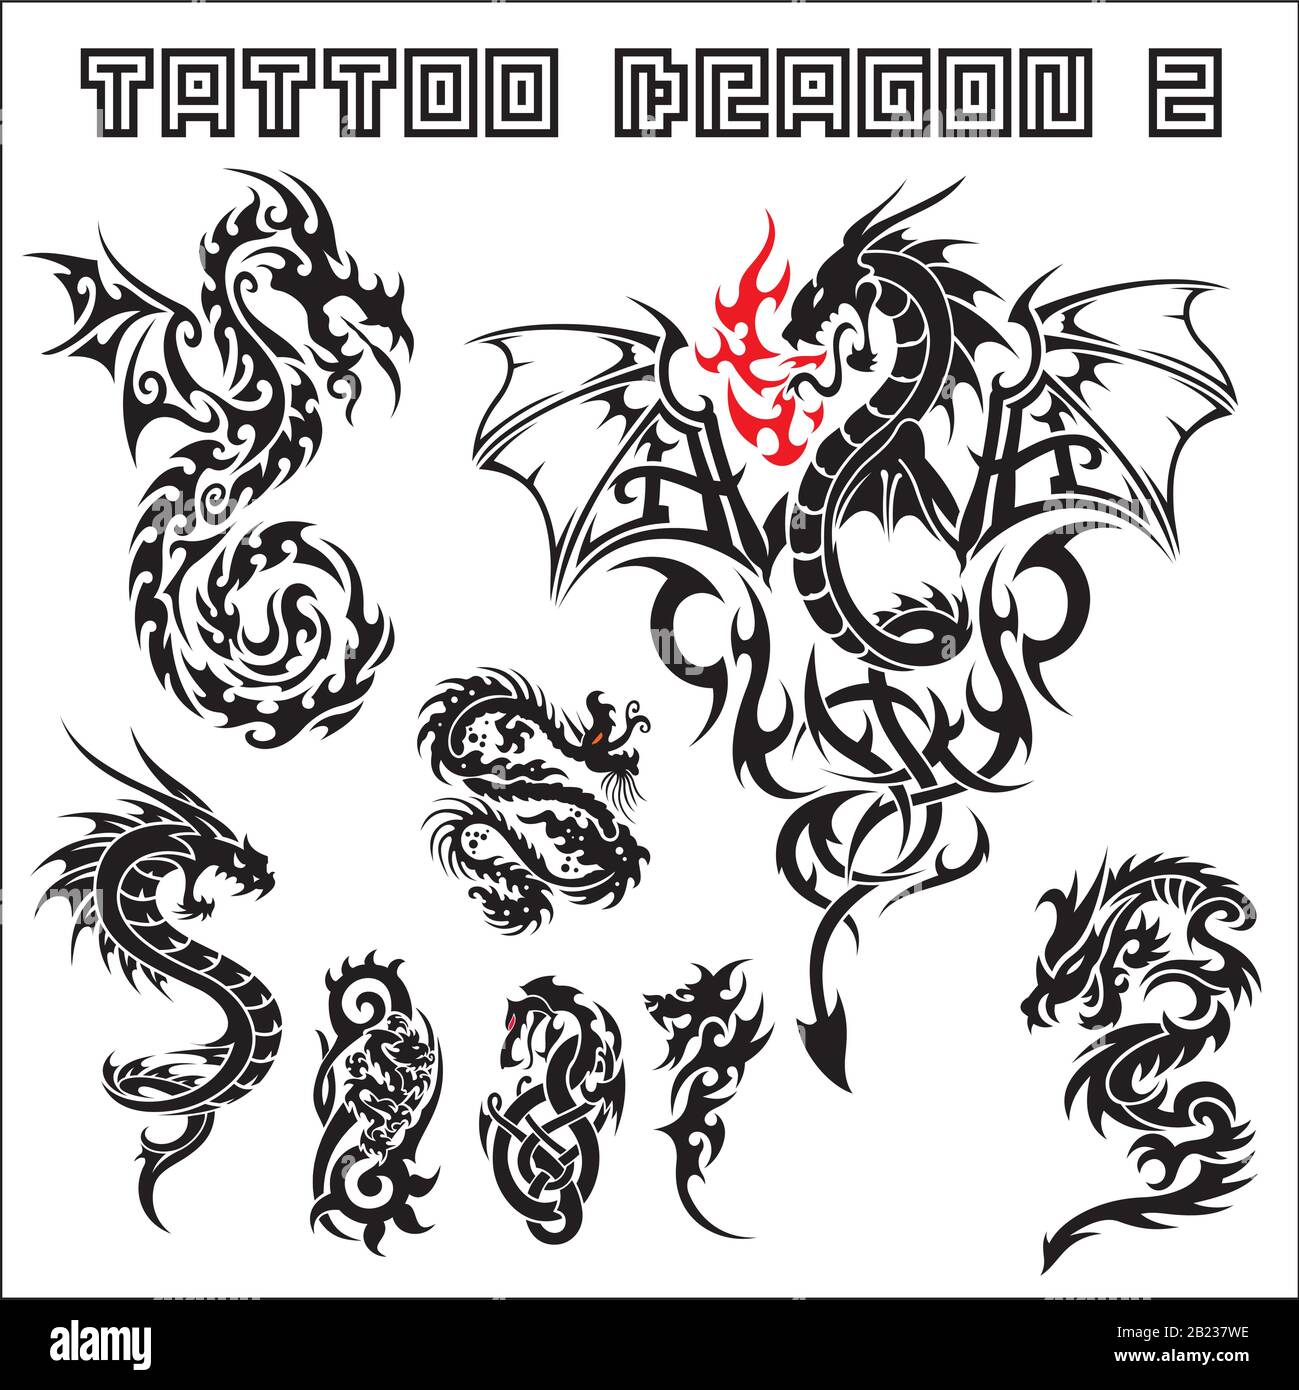 tattoo art collection illustration Stock Vector